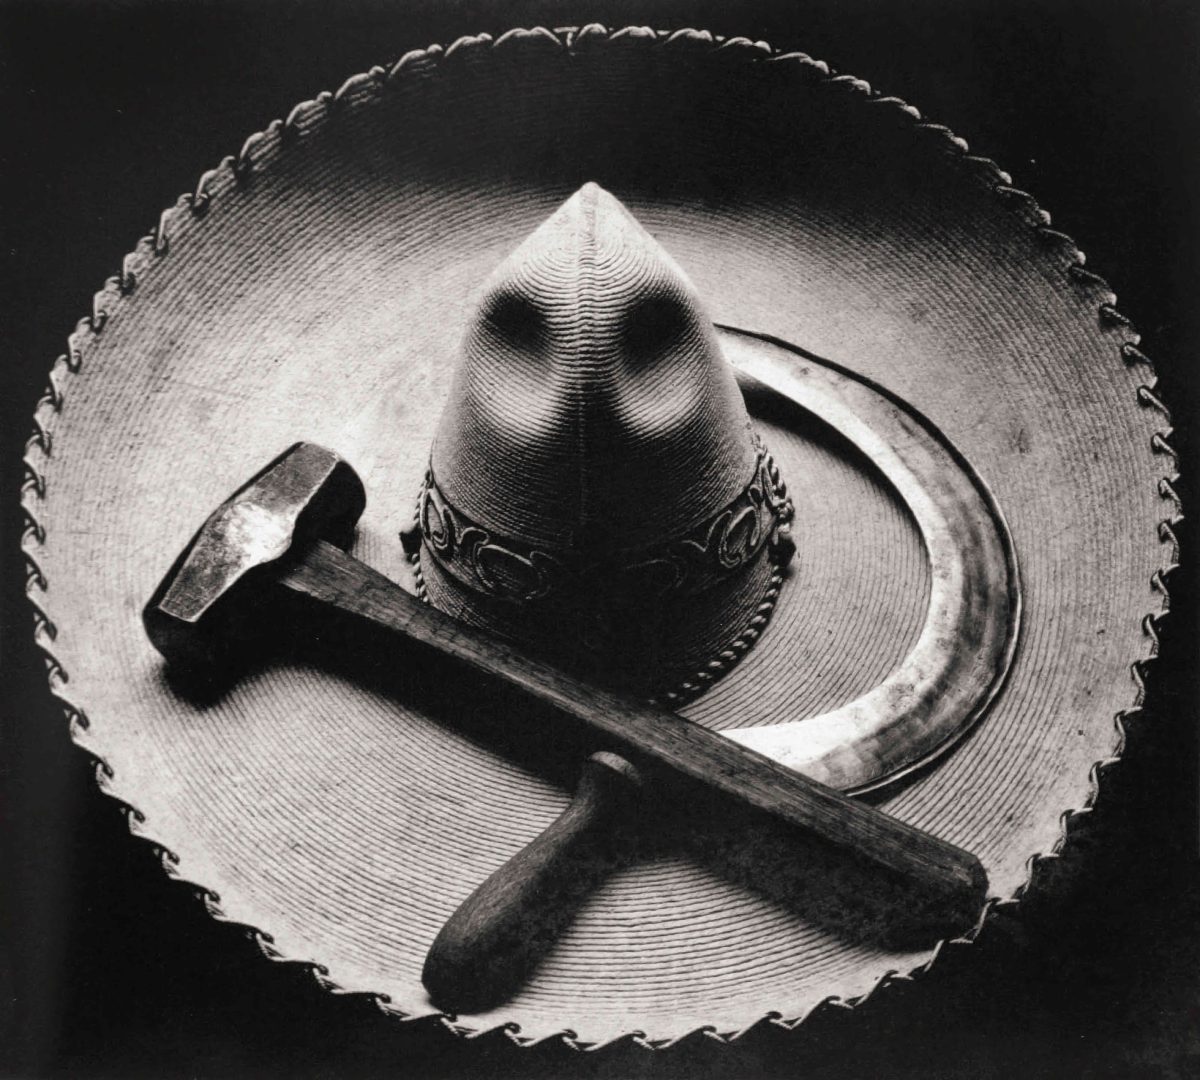 SEM DISTORÇÕES OU MANIPULAÇÕES – FOTOGRAFIA DE TINA MODOTTI Artes & contextos Tina Modotti Sombrero Hammer and Sickle 1927 small